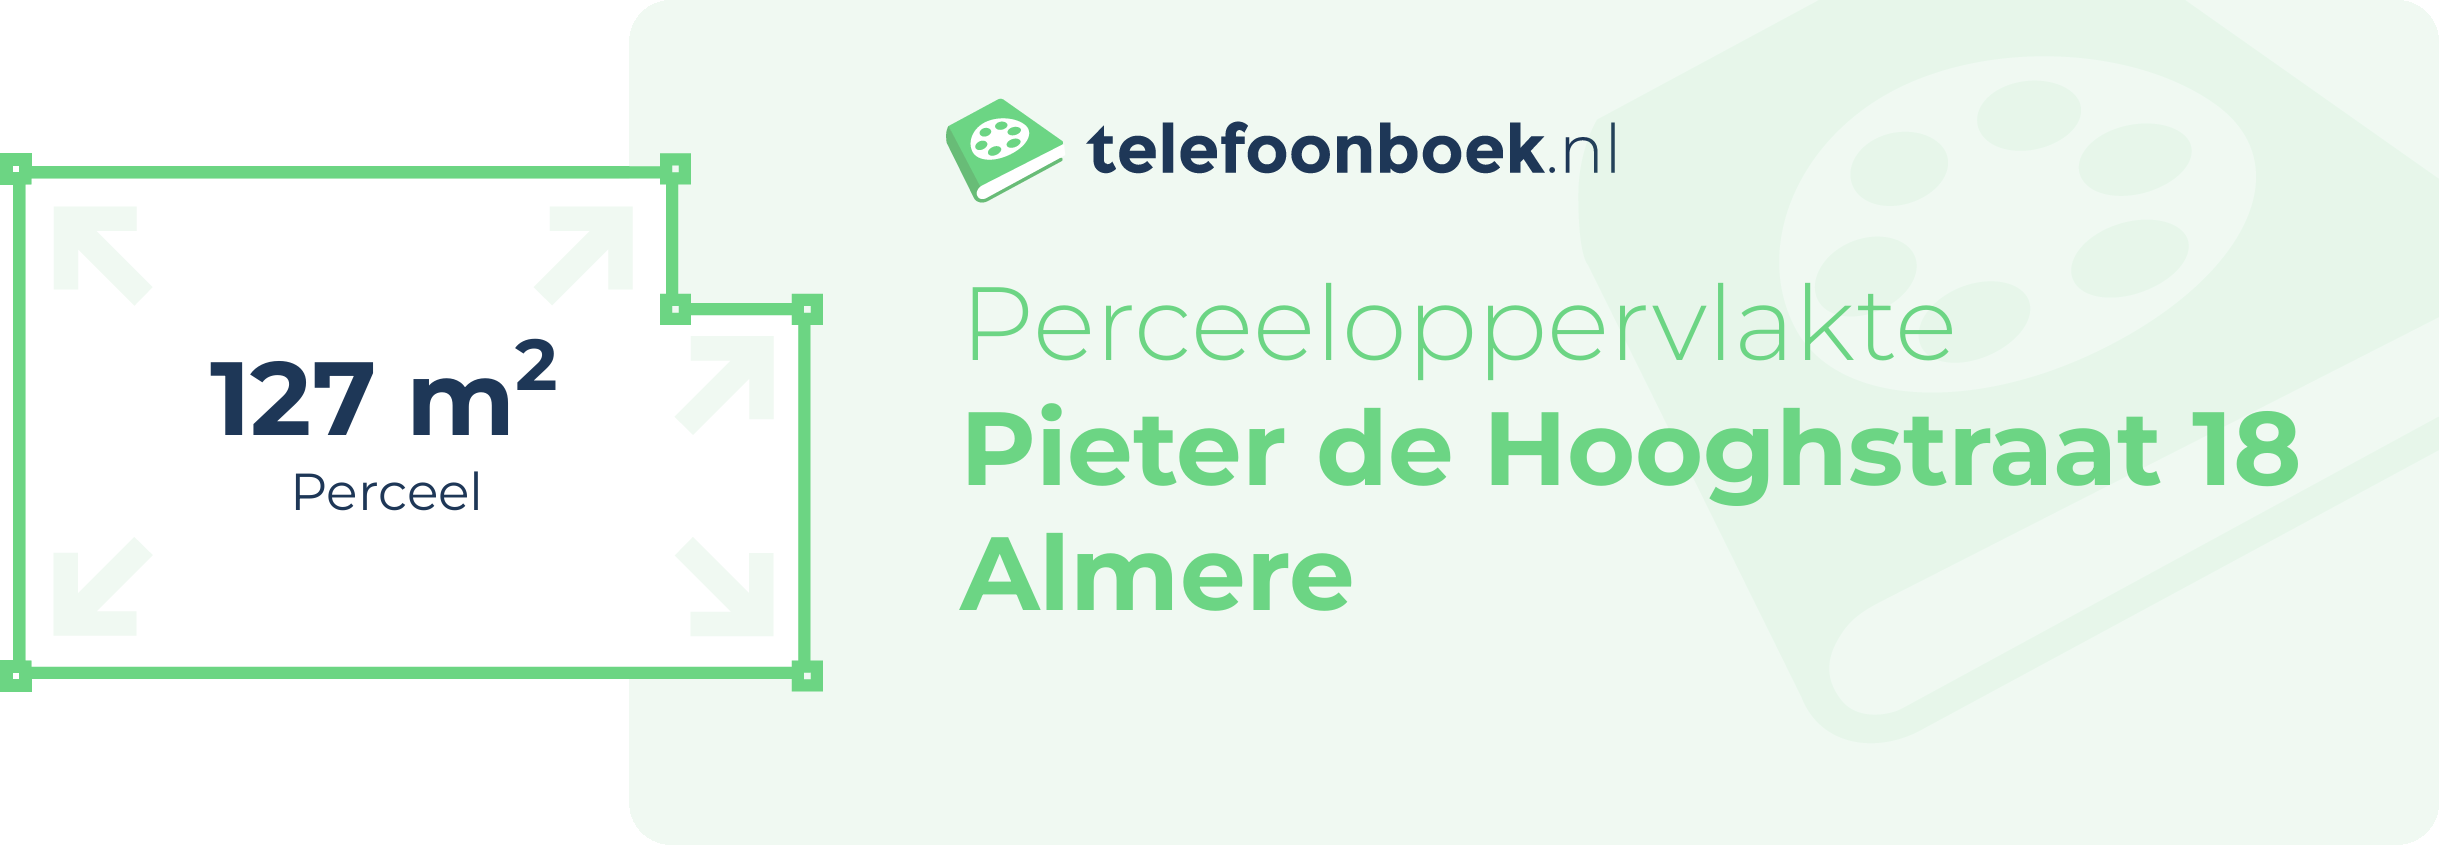 Perceeloppervlakte Pieter De Hooghstraat 18 Almere